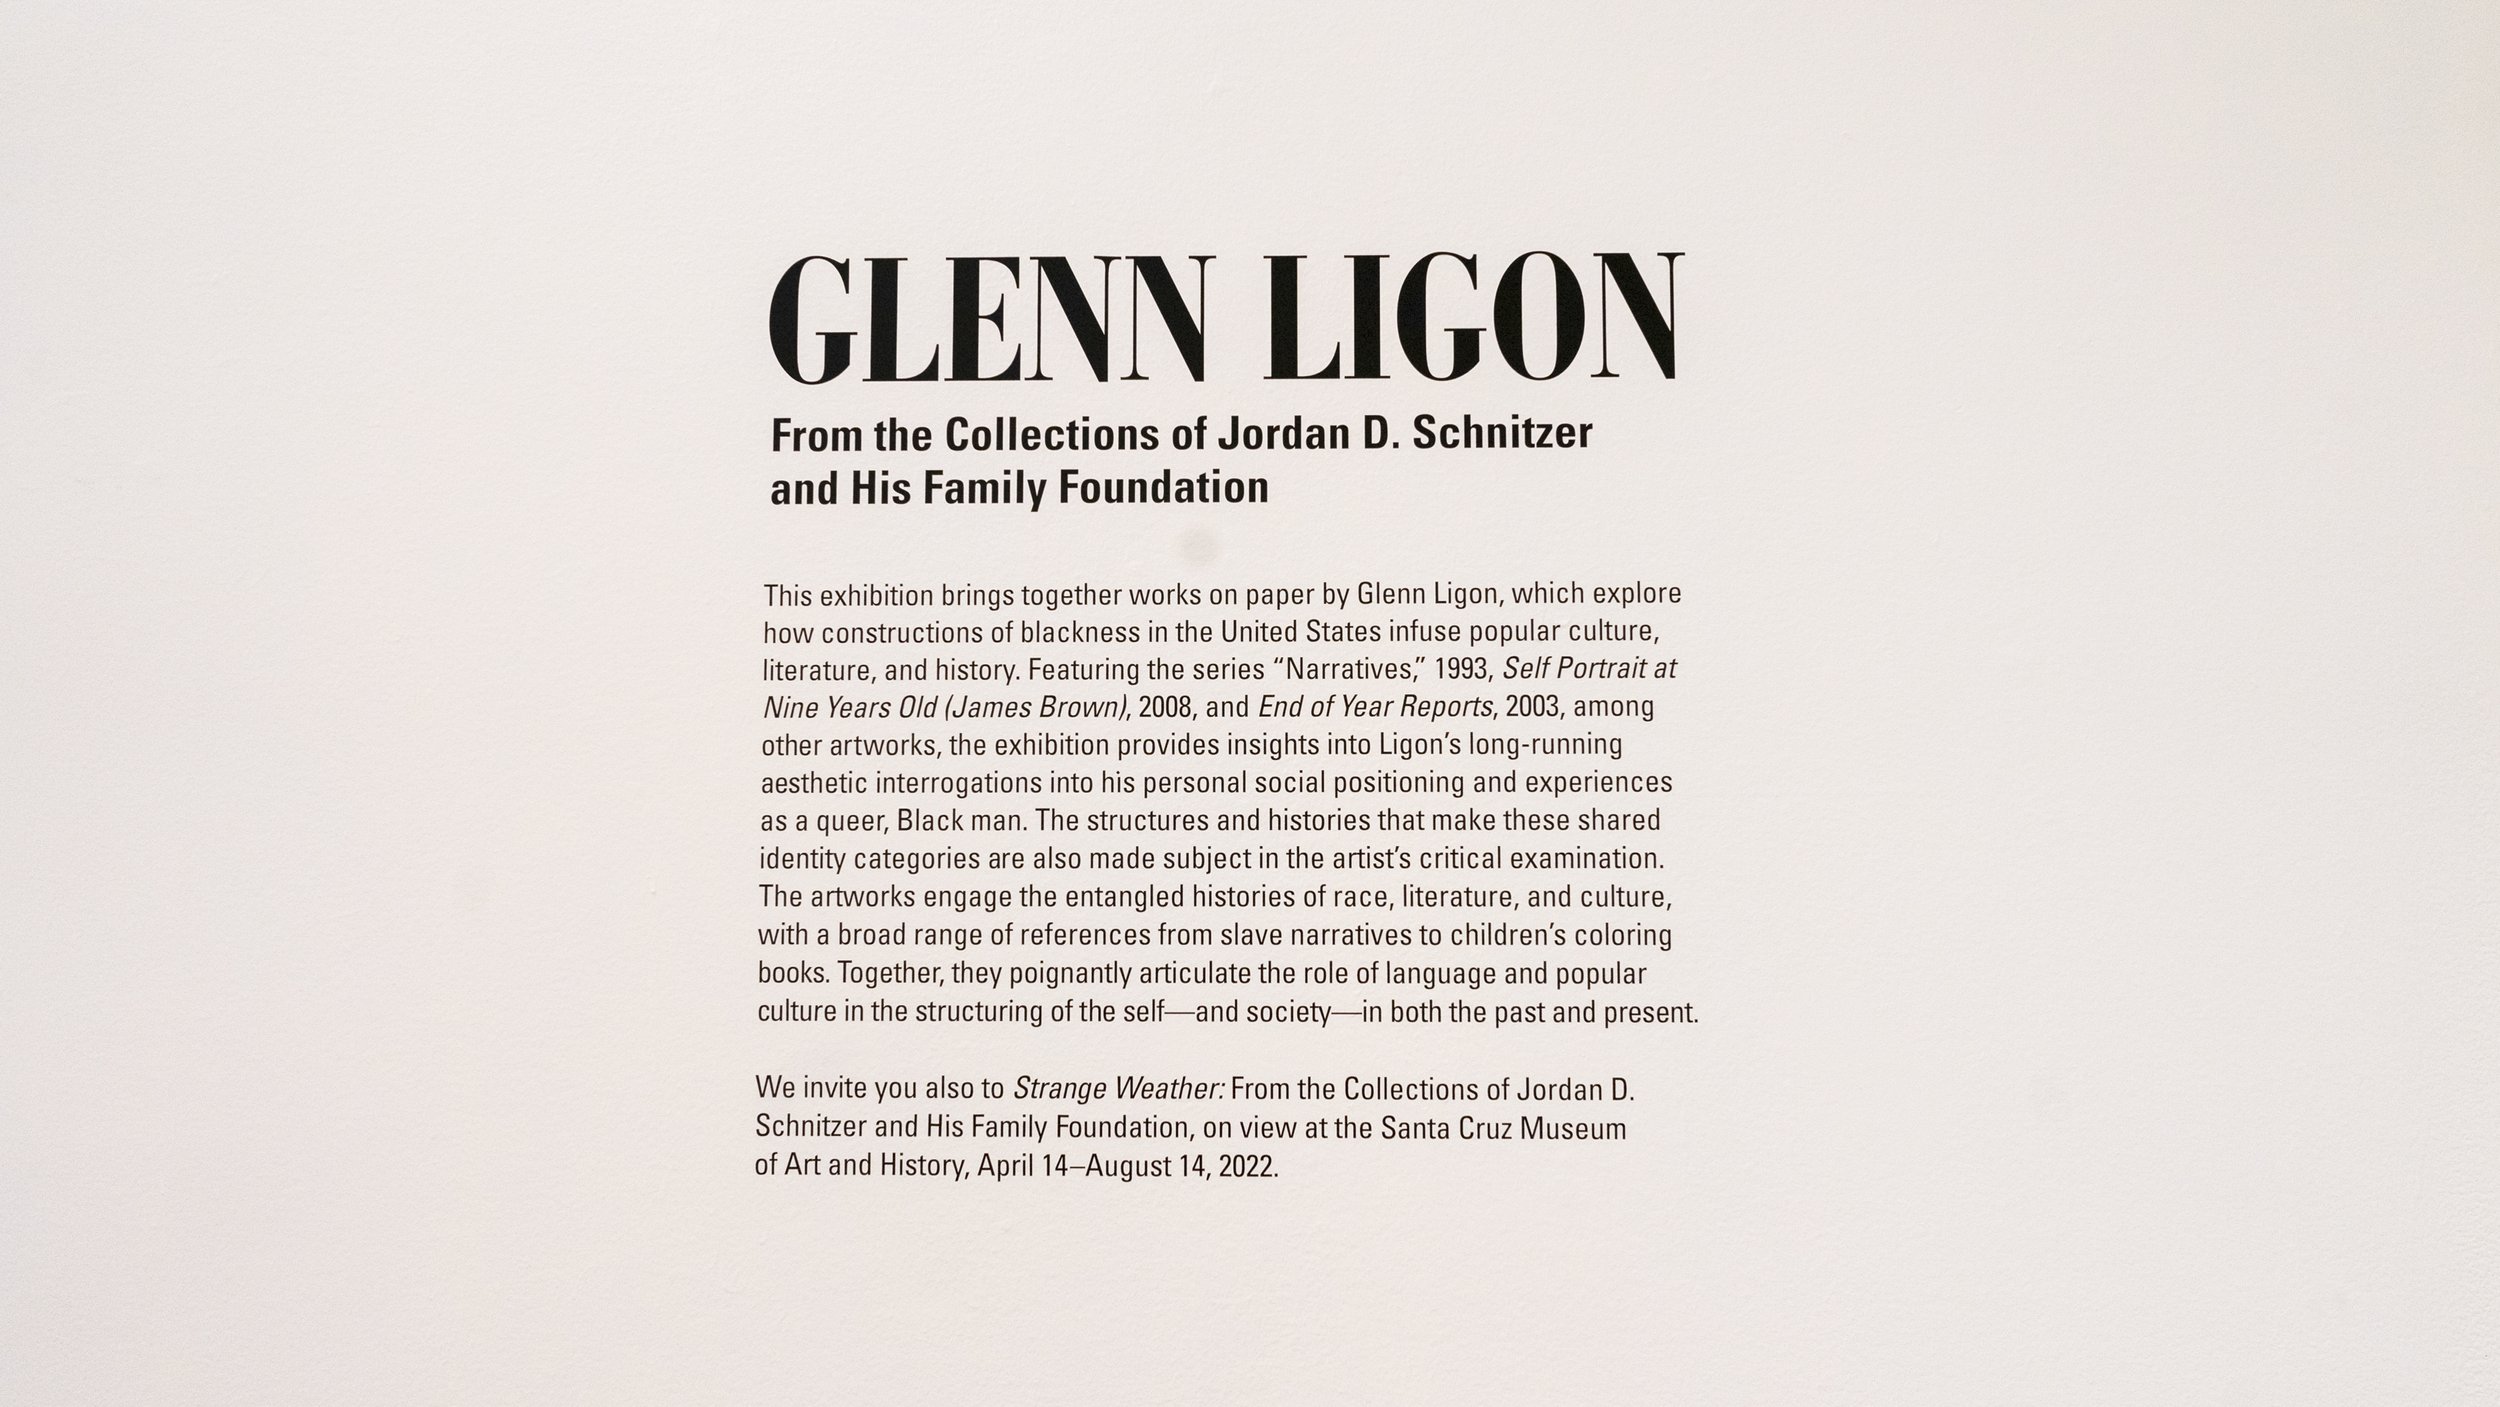  Glenn Ligon at Sesnon Art Gallery 